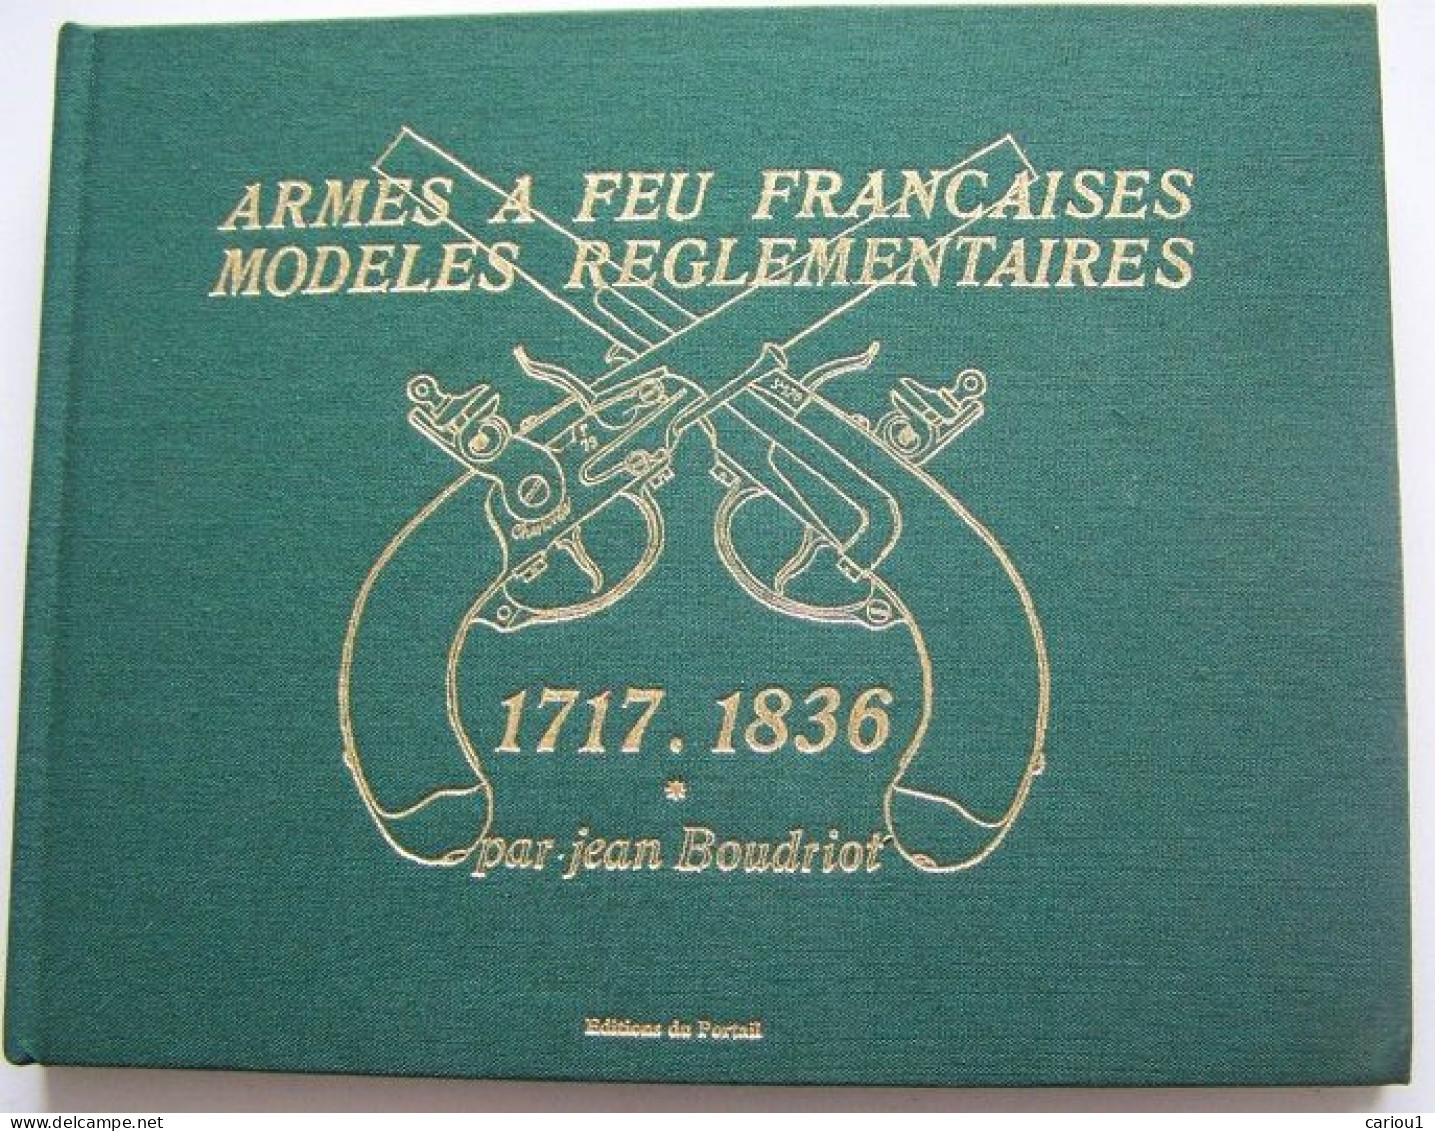 C1  Boudriot ARMES A FEU FRANCAISES 1717 1836 Tome 1 1997 Relie ILLUSTRE - Francés